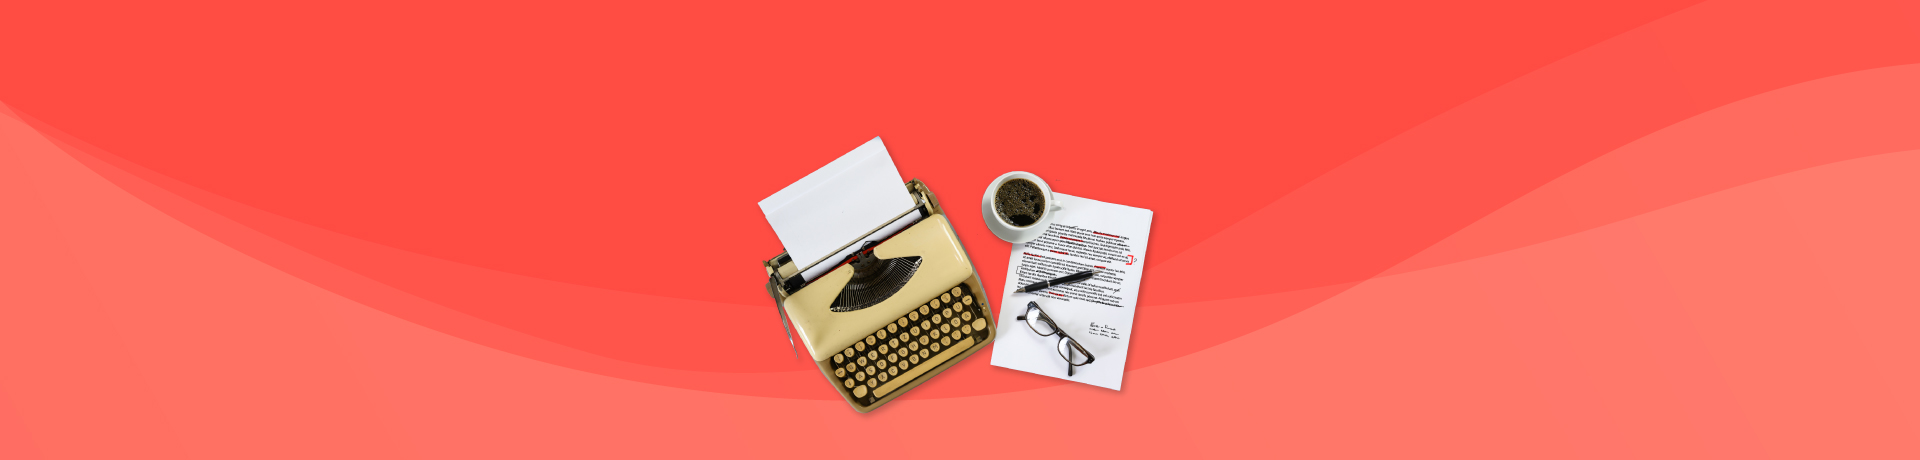 Diventare editor: le storie, l'editing e il mercato editoriale